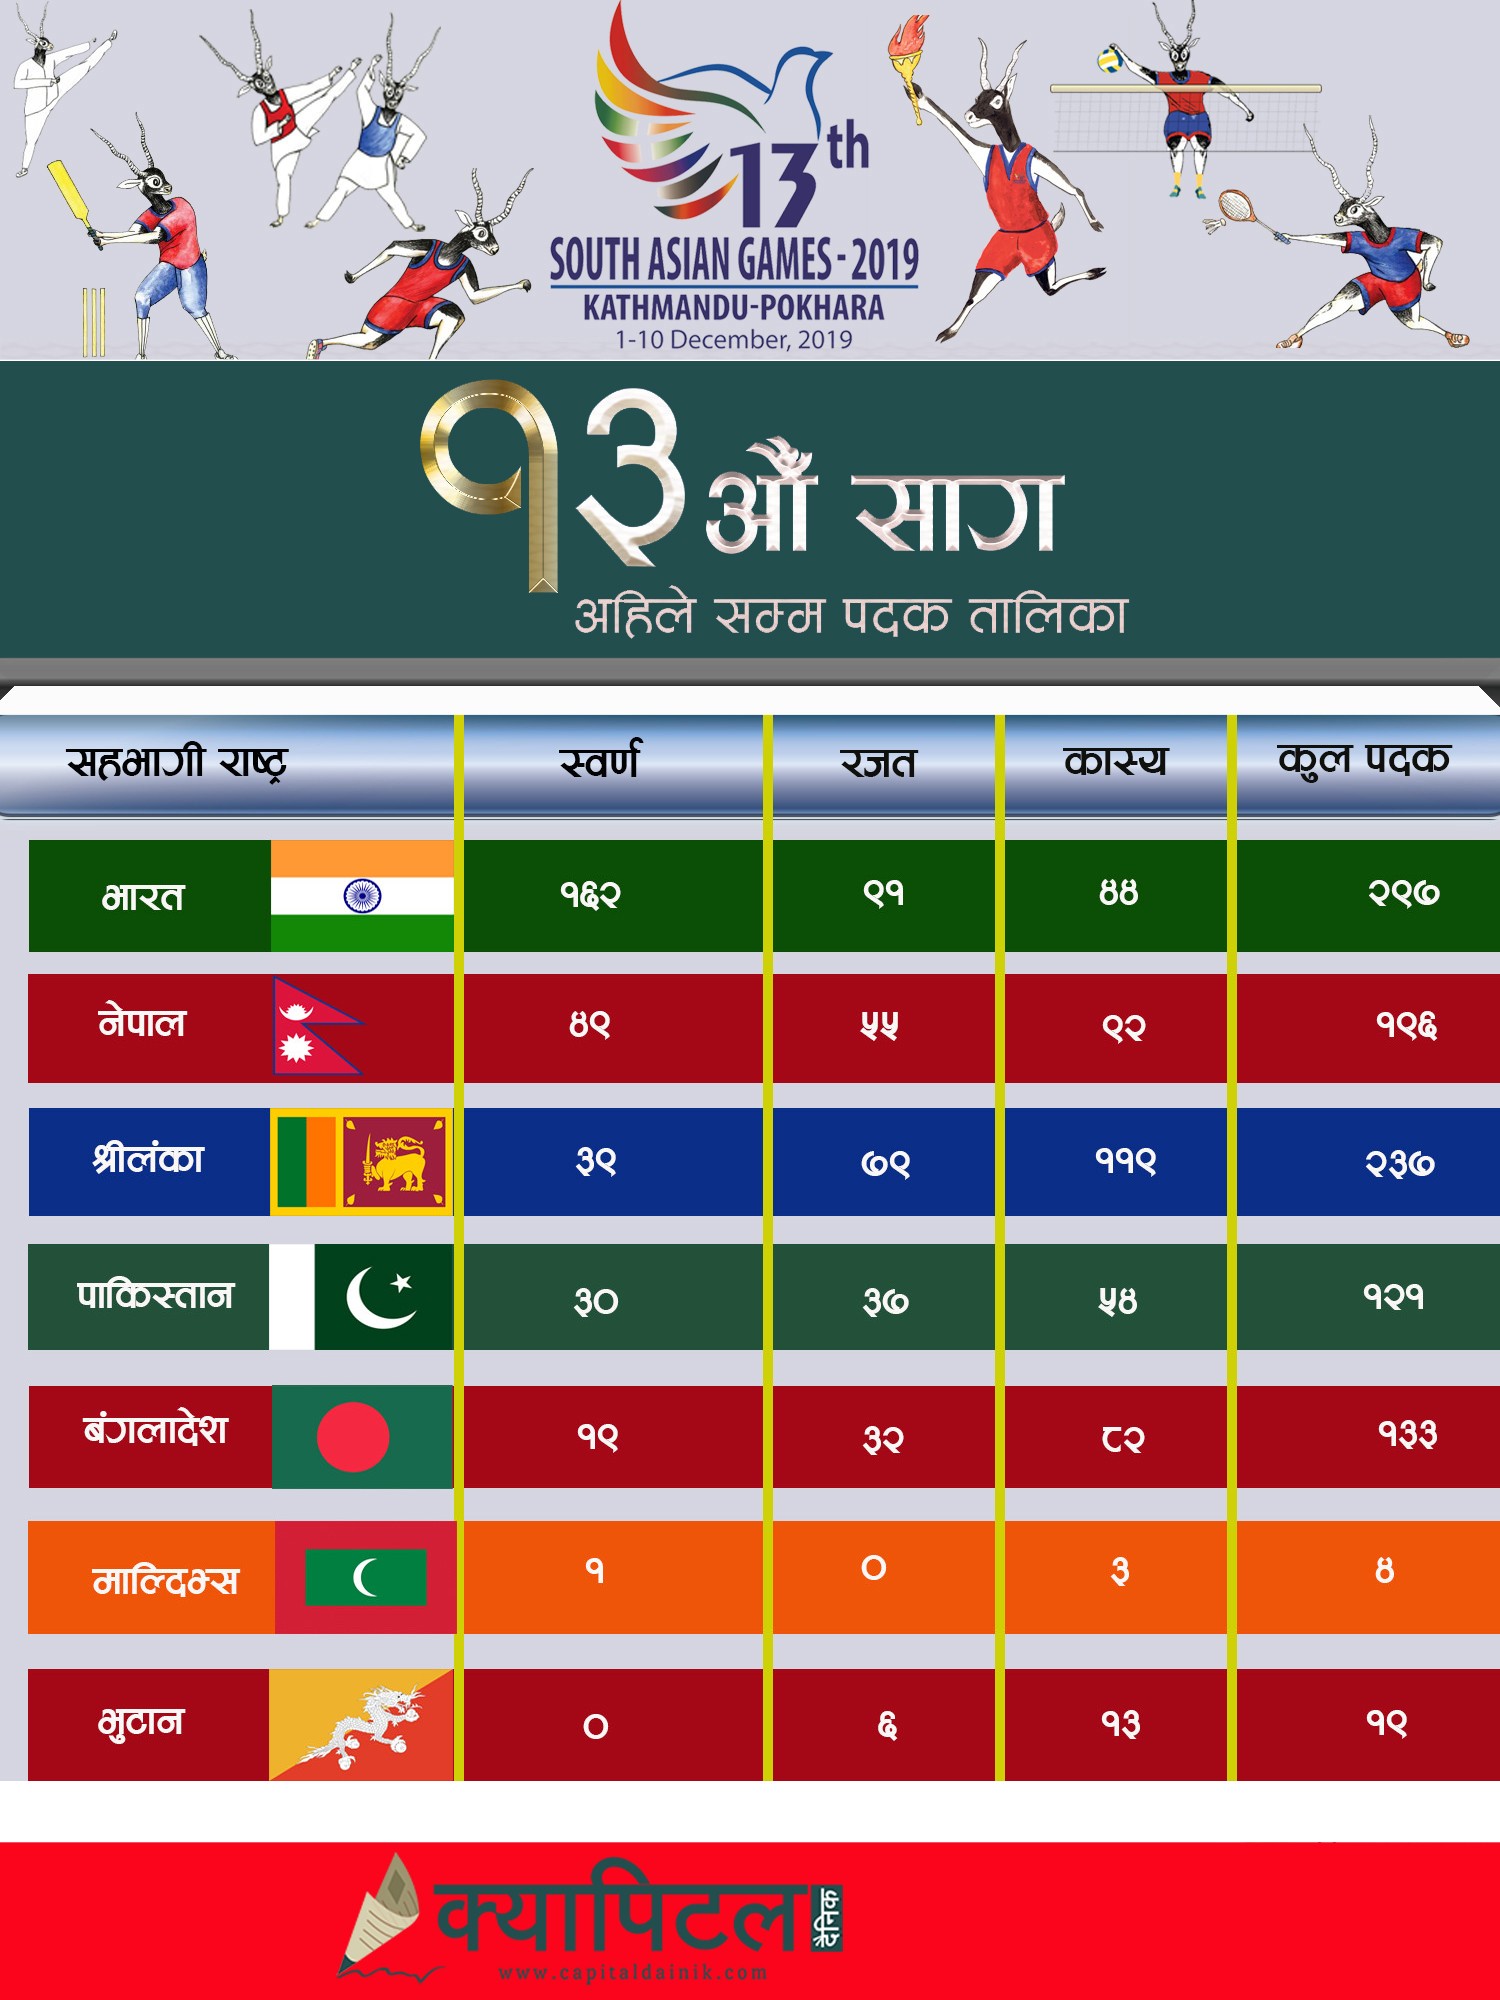 नेपालमा जारी १३औँ सागमा अहिलेसम्म कुन देशले कति पदक जिते ? (हेर्नुहाेस पदक संख्यासहित)